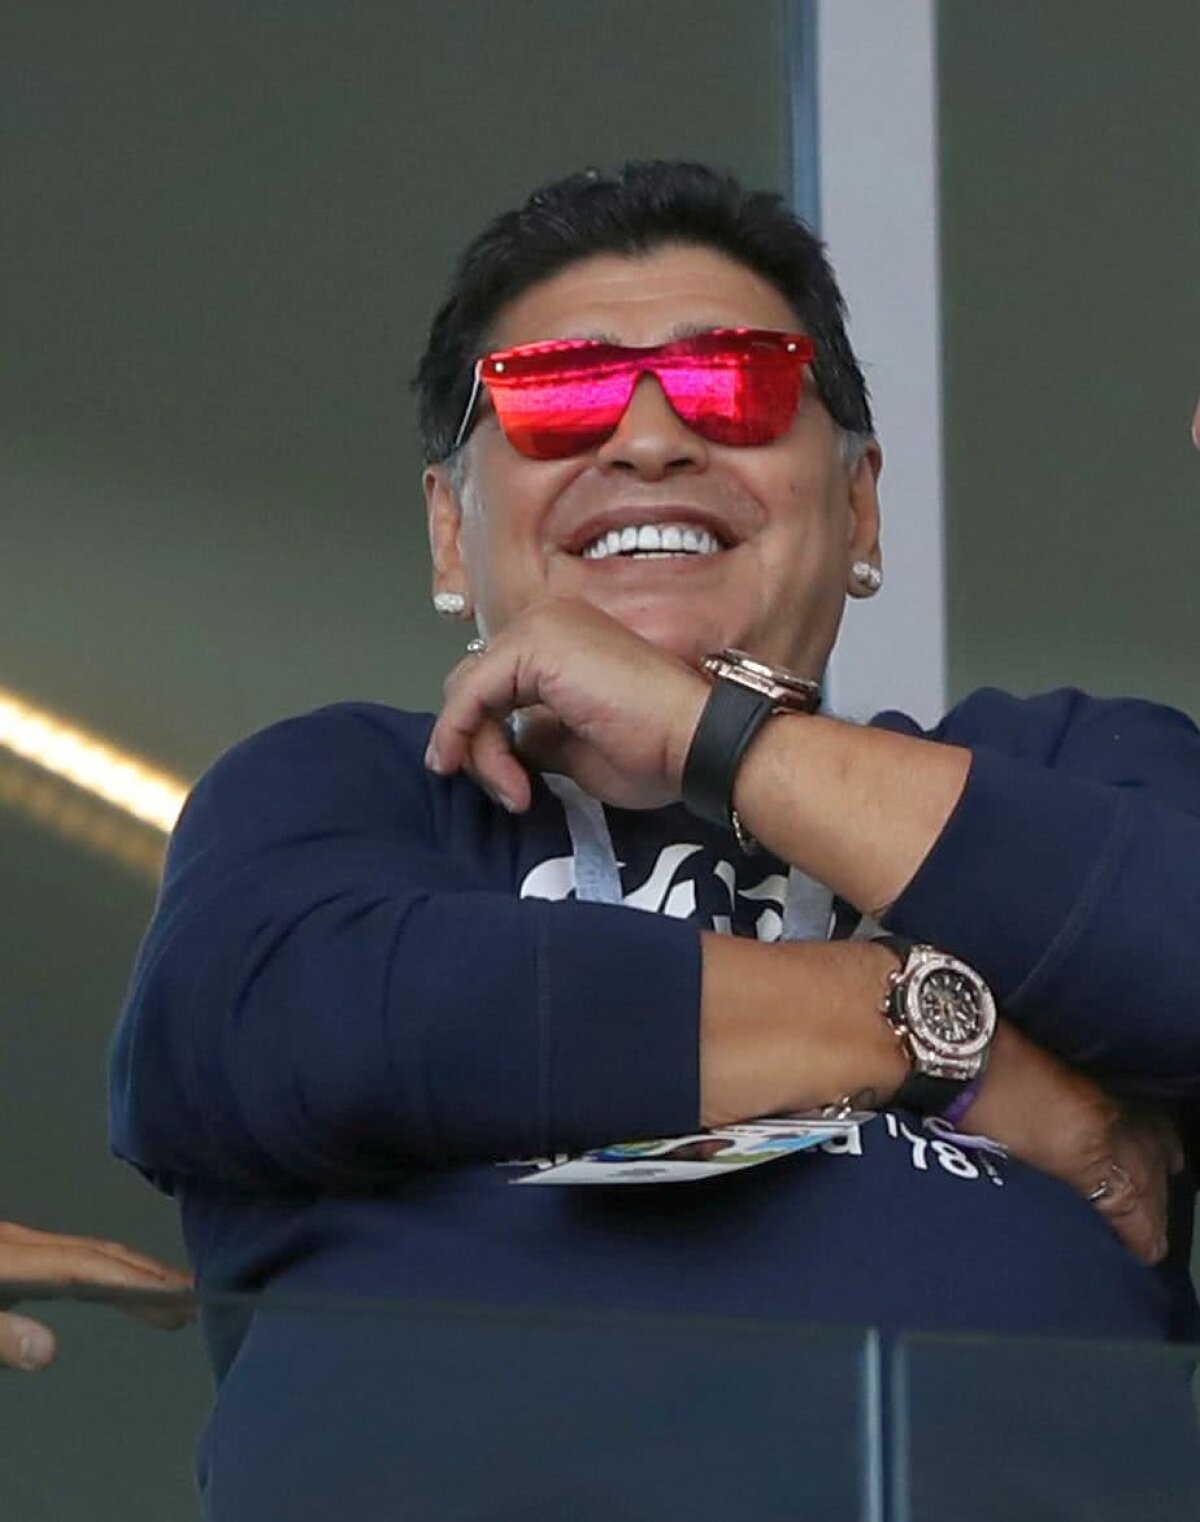 VIDEO + FOTO Două momente impresionante cu suporterii Argentinei » Maradona a fost din nou în centrul atenției